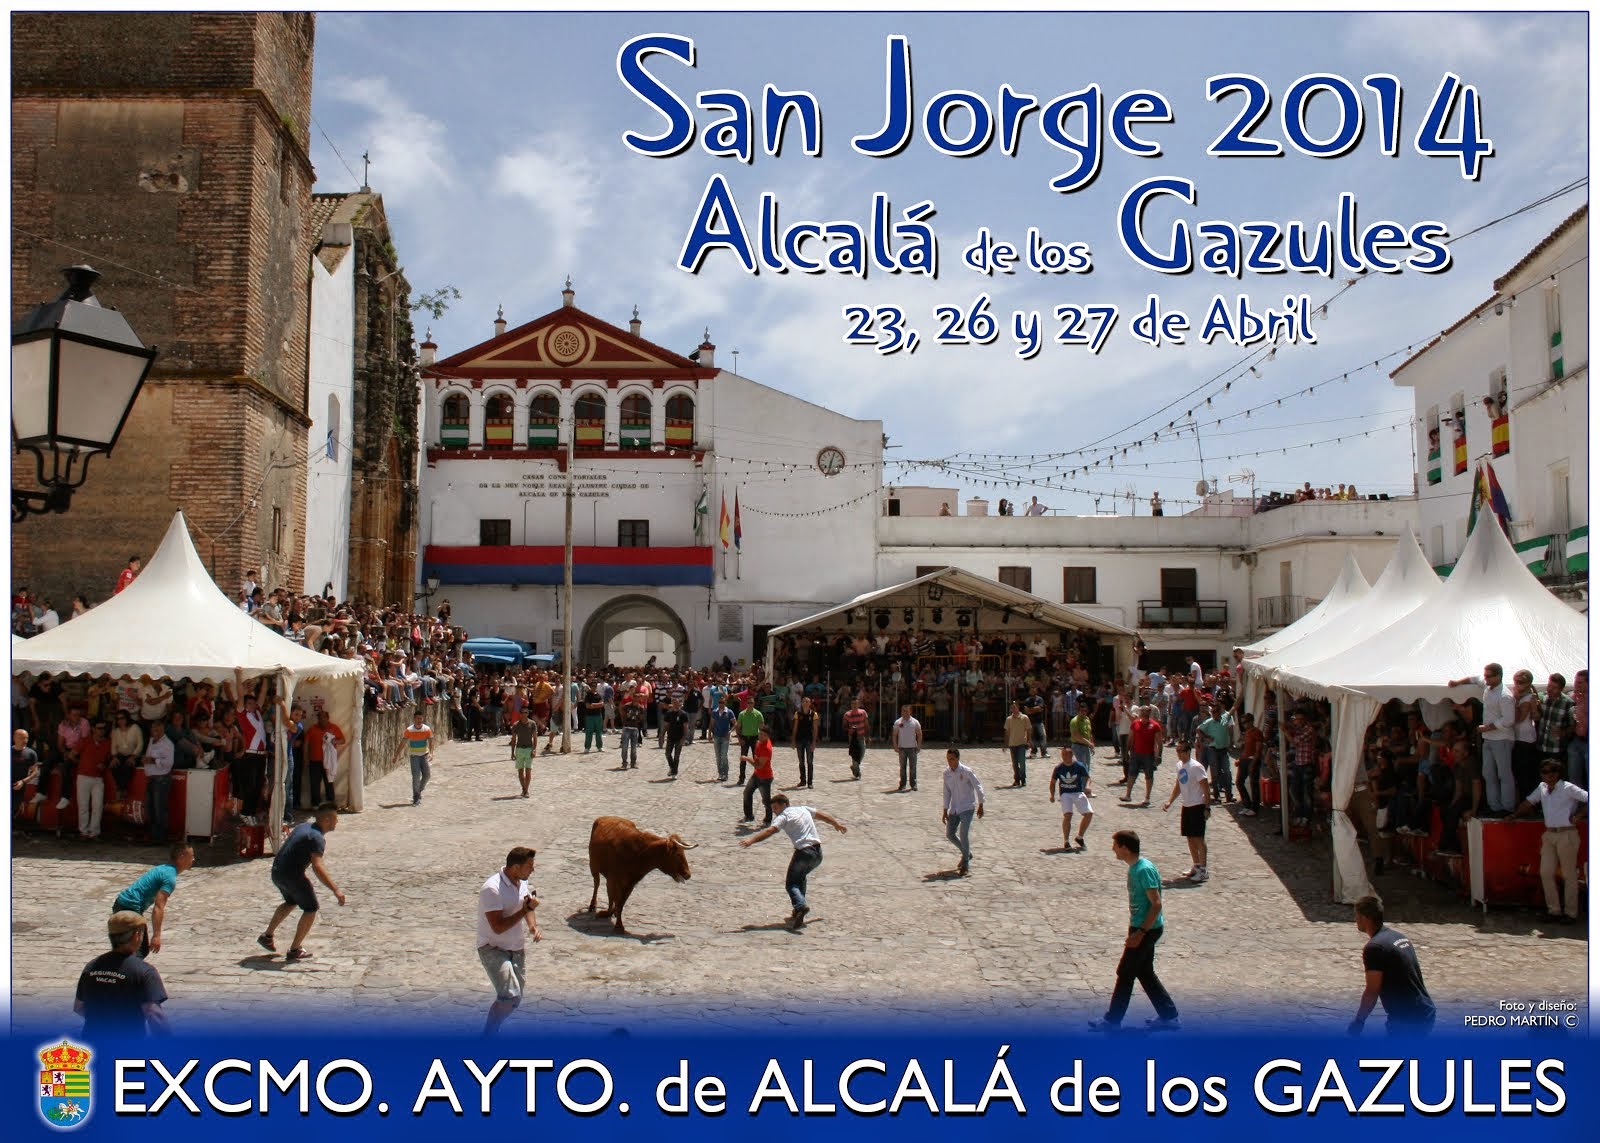 SAN JORGE 2014 - ALCALÁ DE LOS GAZULES